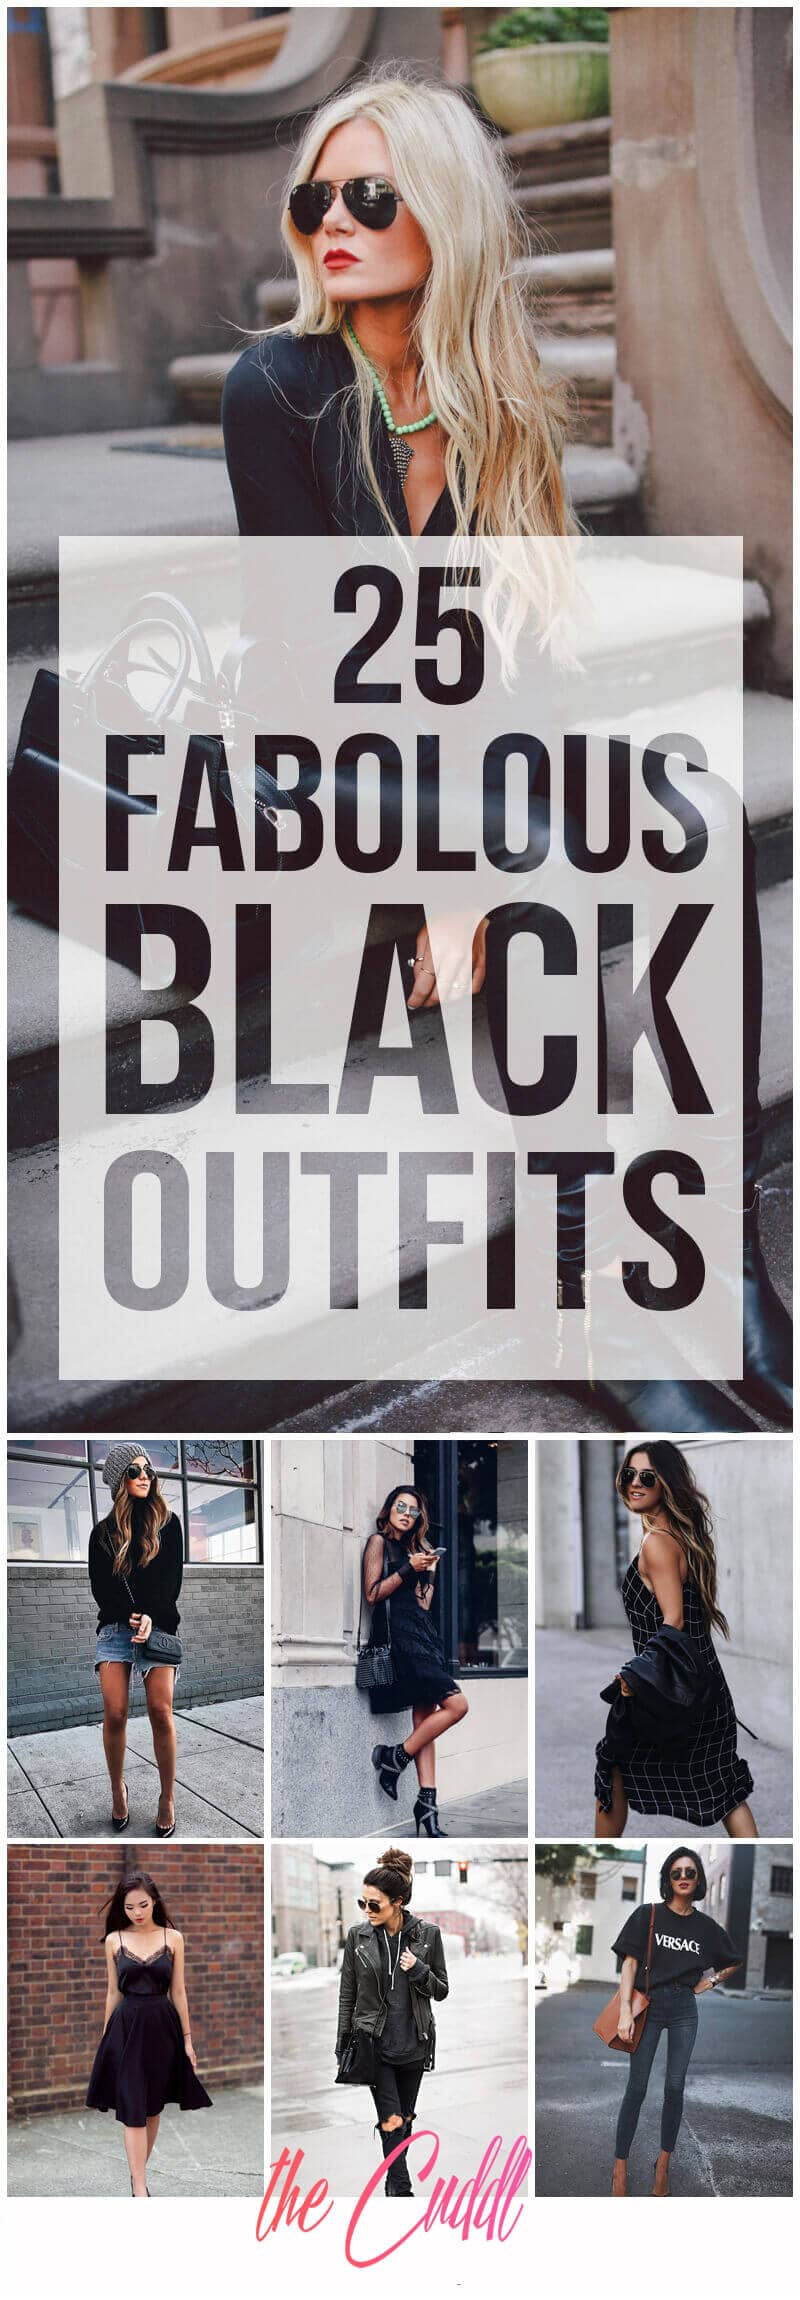 25 Fabolous Black Outfits